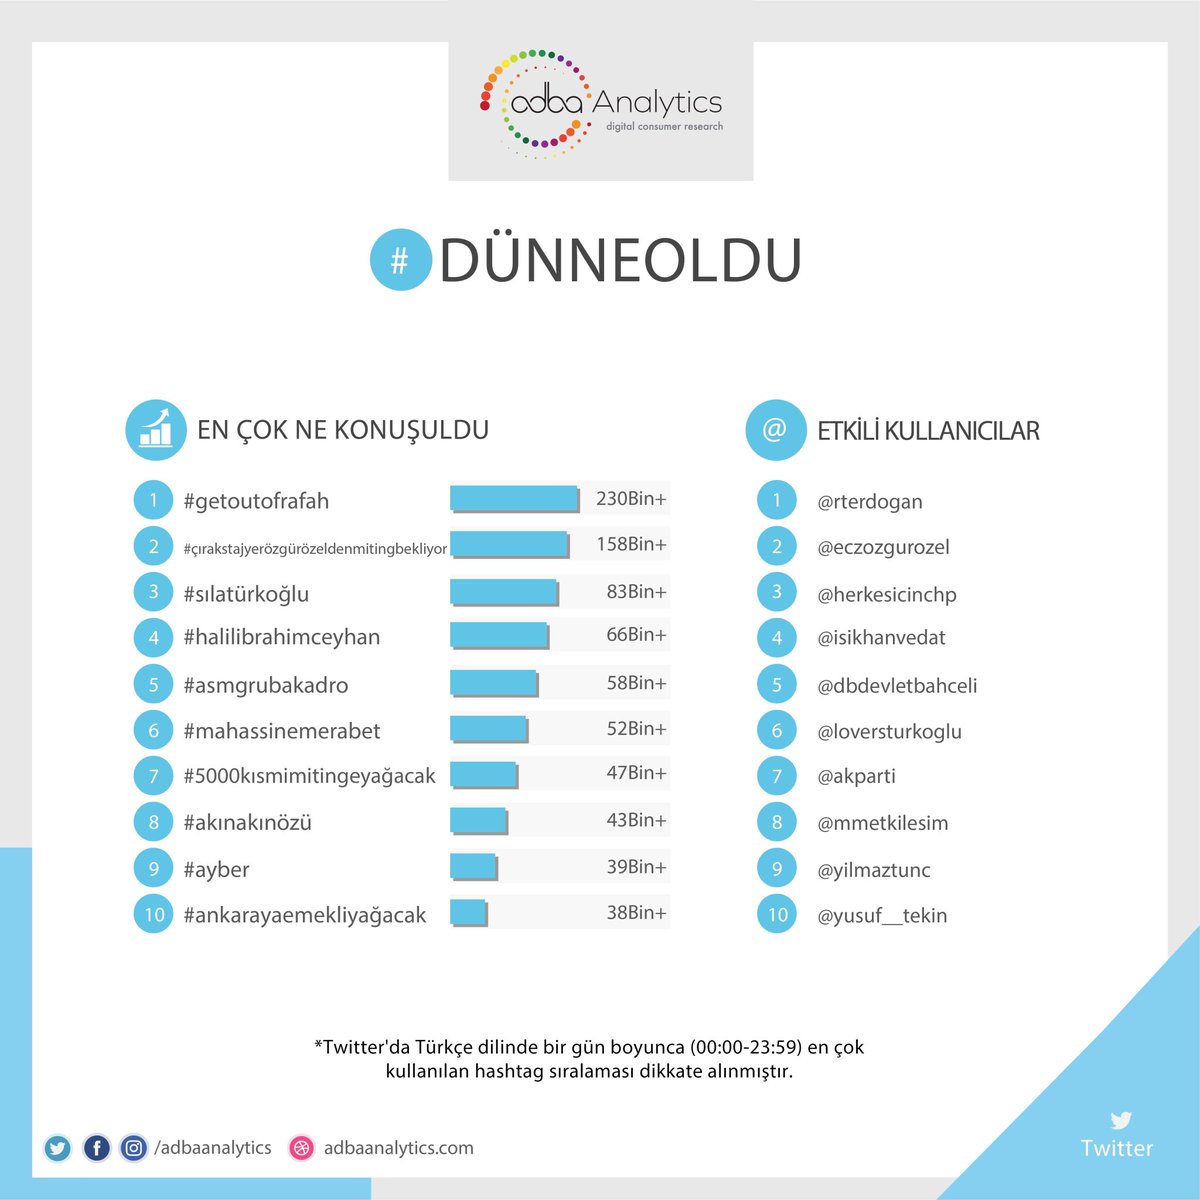 Los temas más comentados  en X según la lista realizada por #Dünneoldu
#AkınAkınözü ocupó el puesto N° 8.